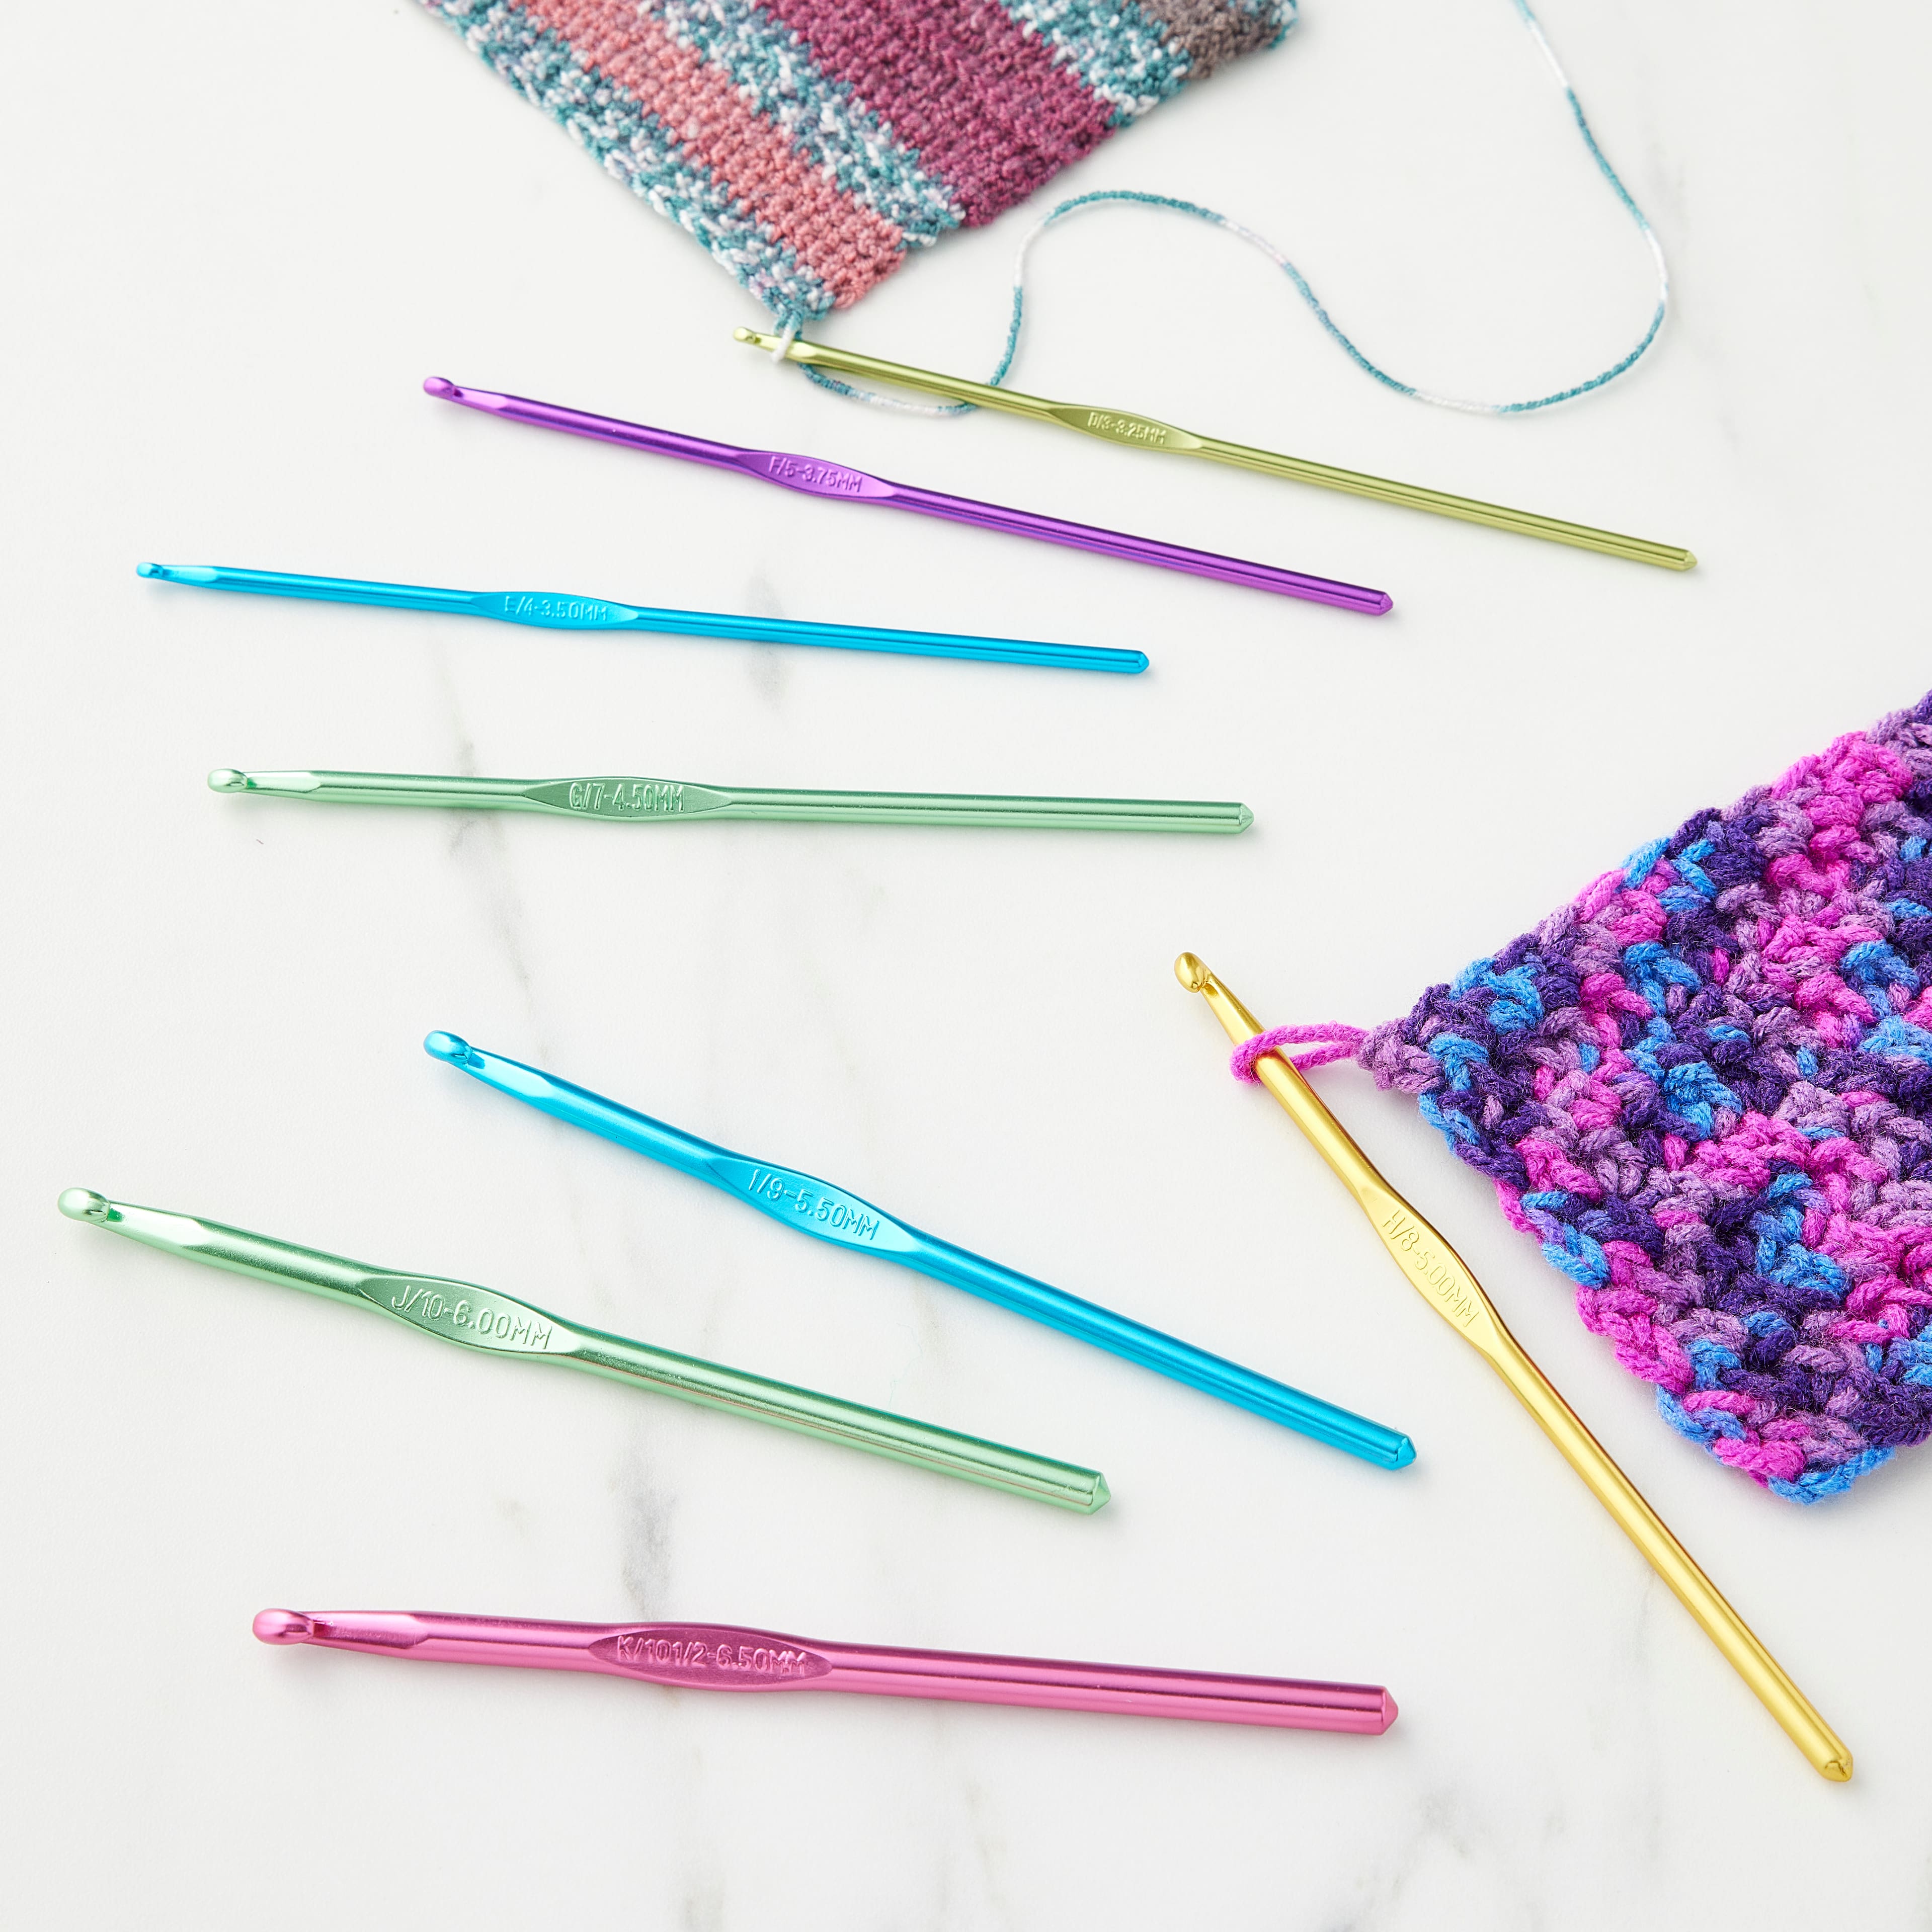 10 Sizes Premium Aluminum Knitting Crochet Hook Set with Storage